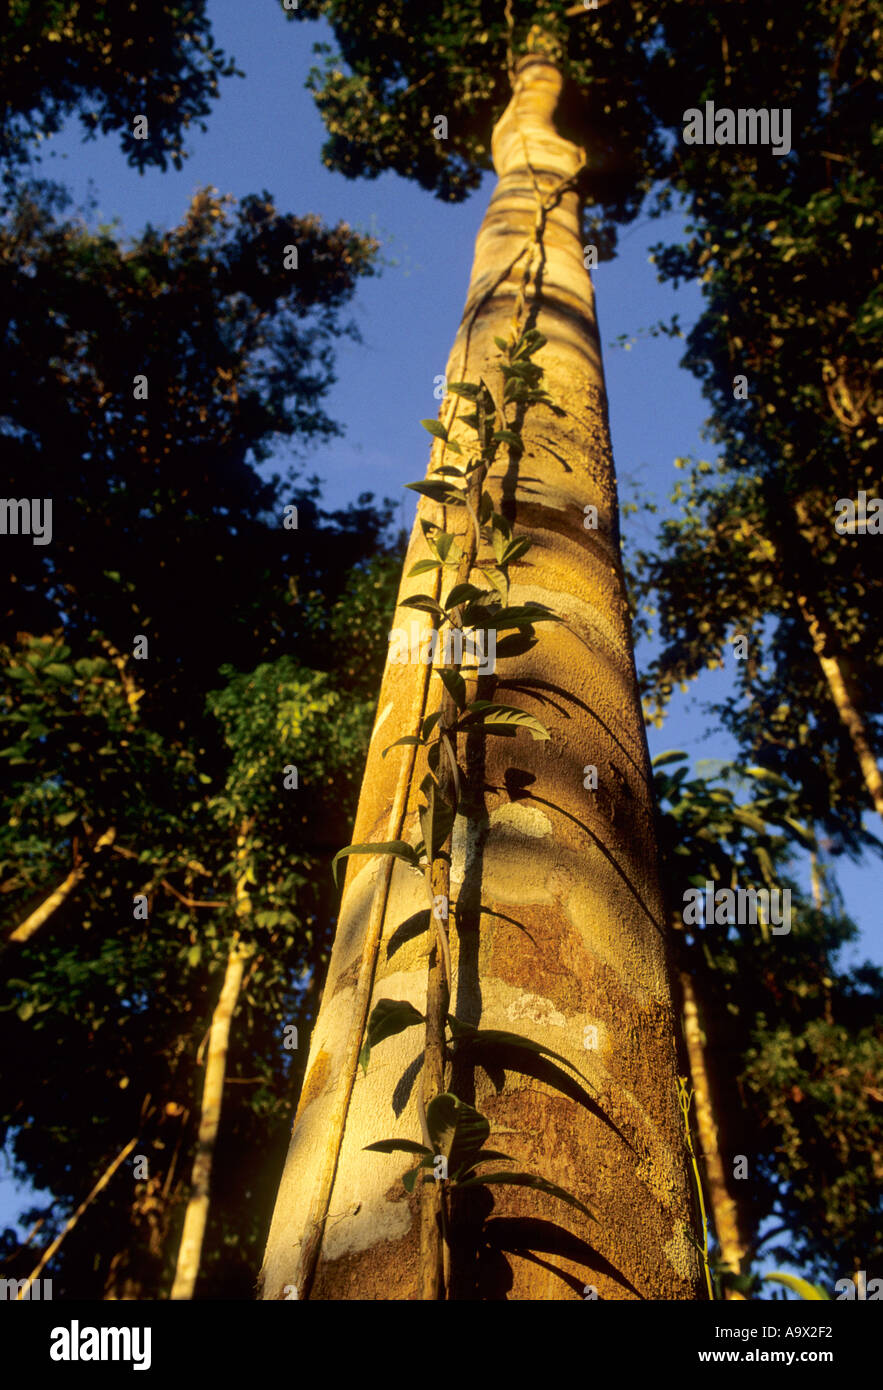 Juruena, Brazil. tall, straight Amazon rainforest tree in golden light with climbing plants. Stock Photo